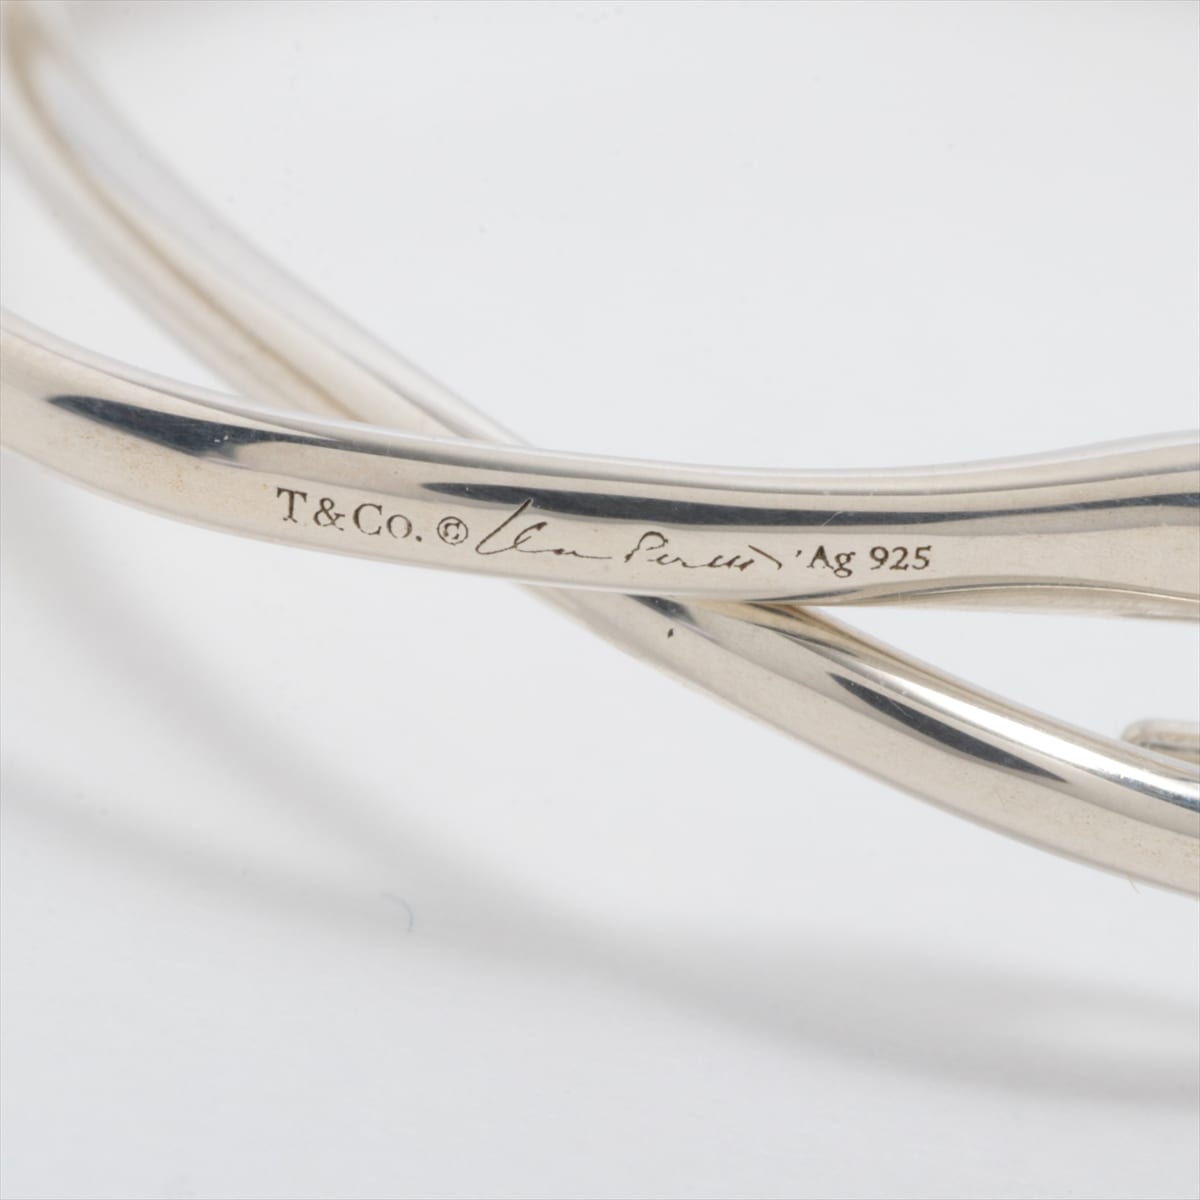 Tiffany Open Heart Hoop Earrings 925 9.4g Silver